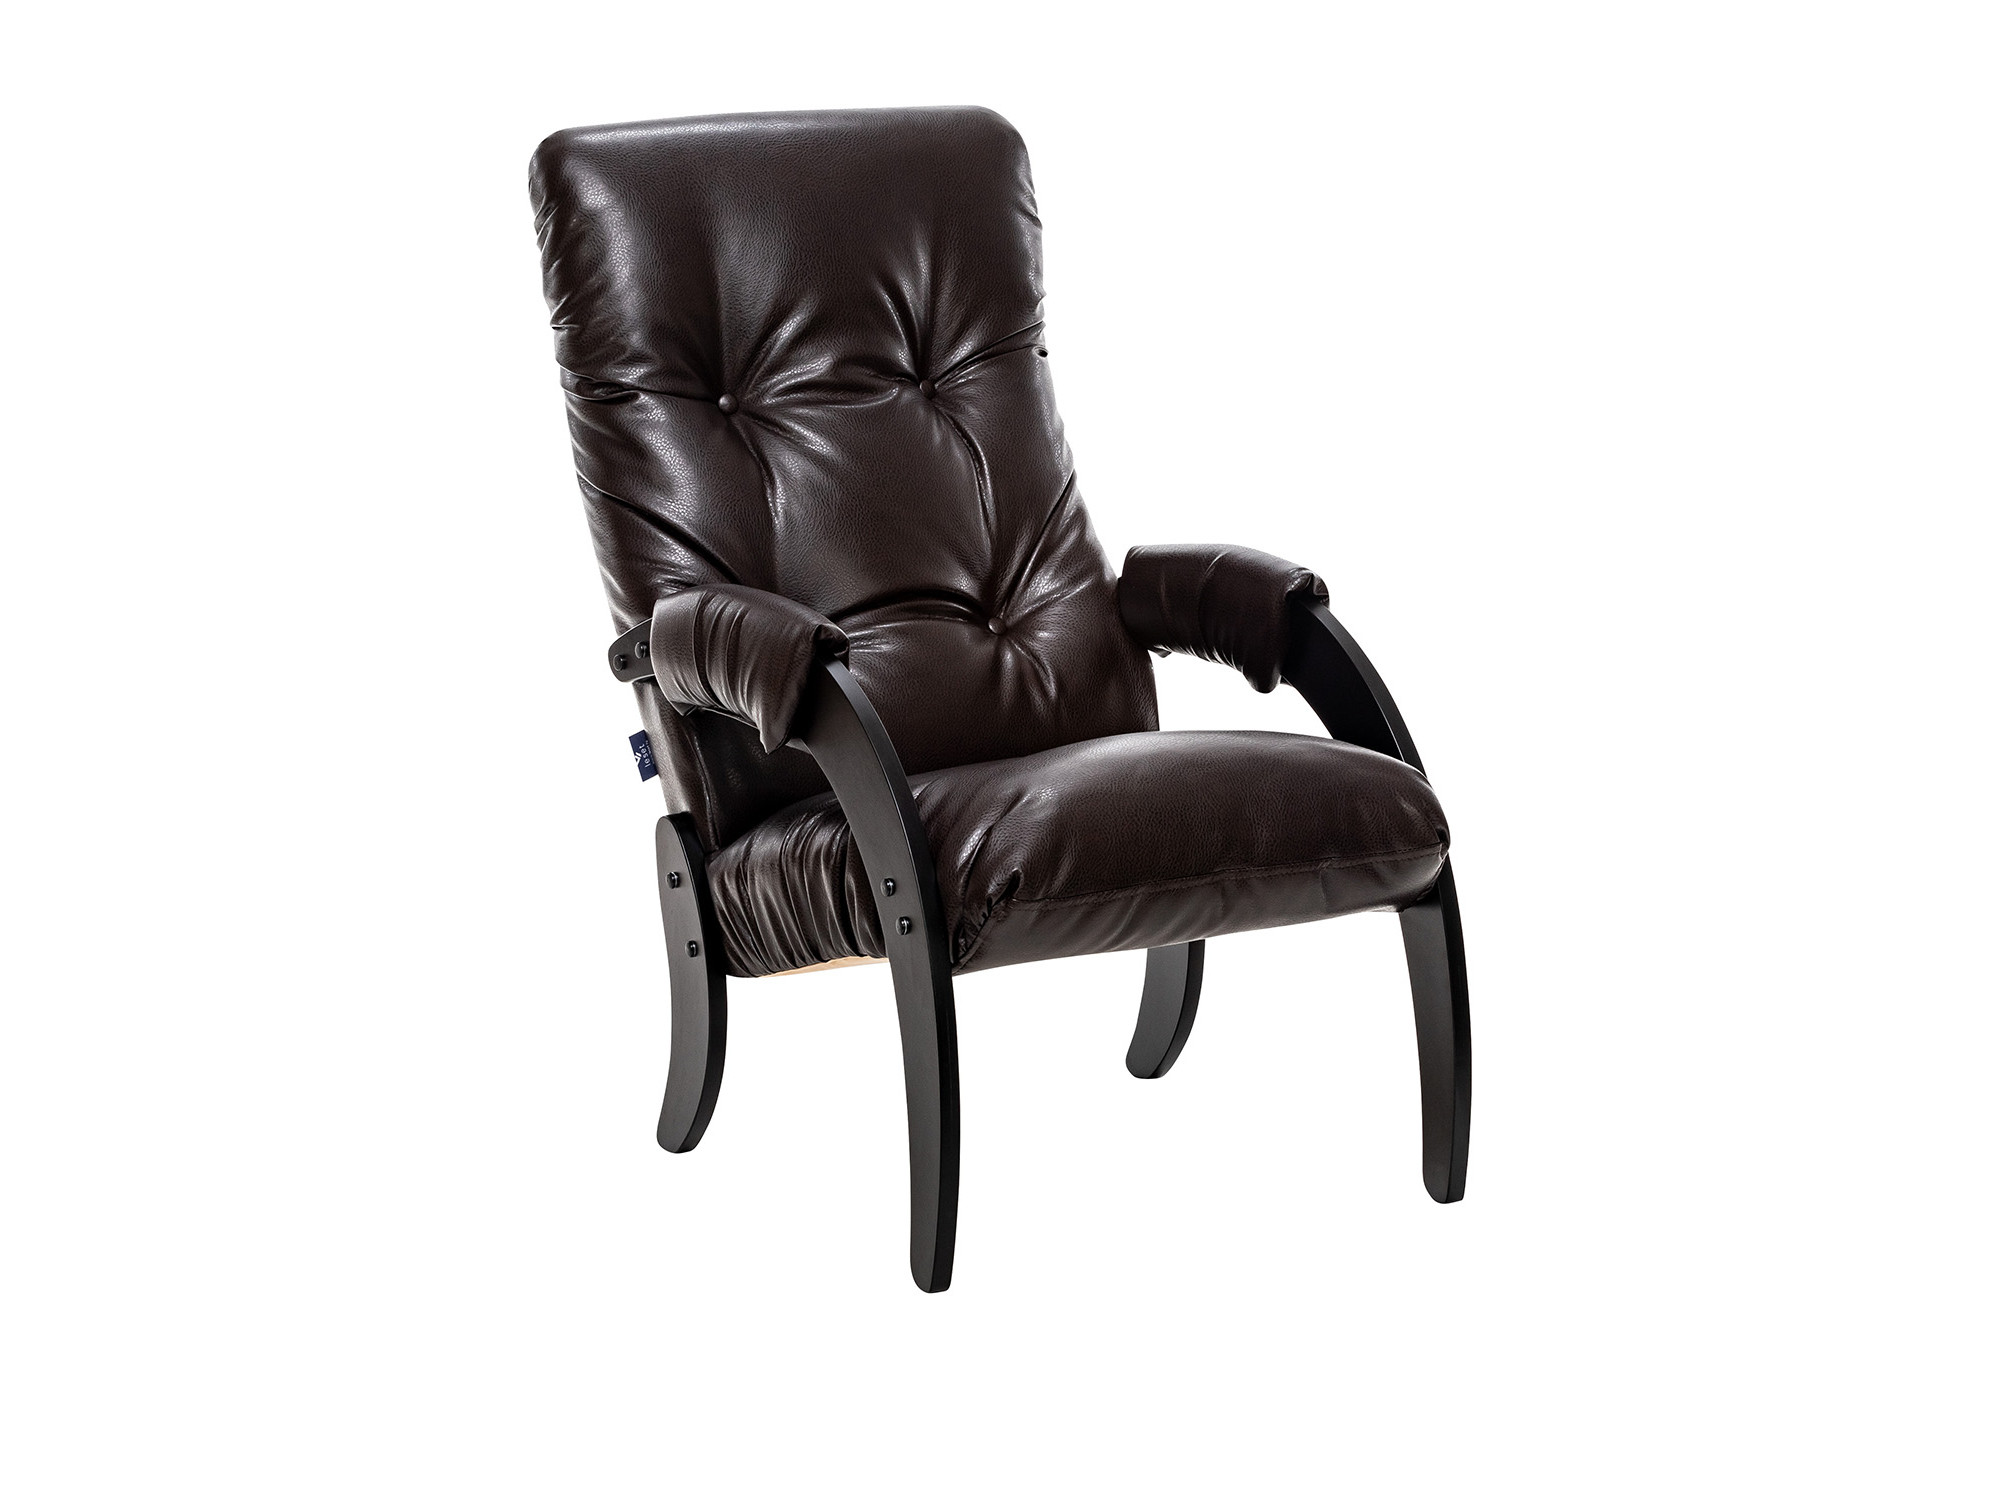 Кресло для отдыха Модель 61 Венге текстура, к/з Varana DK-BROWN MebelVia Varan кресло для отдыха модель 11 венге